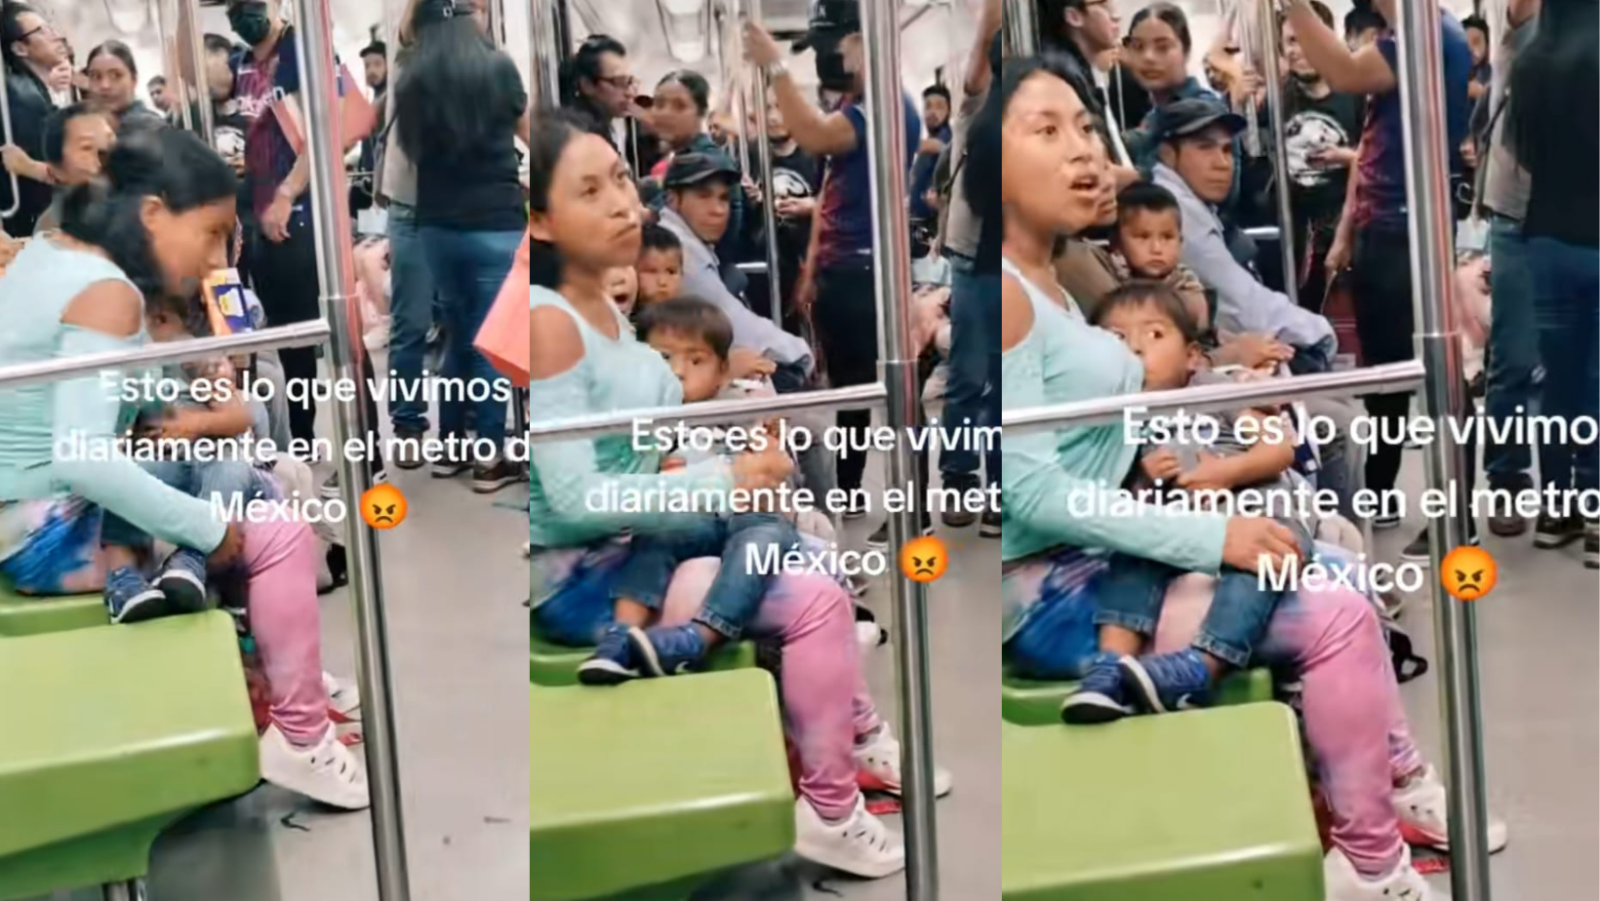 Mujeres pelean en metro CDMX tras criticar a pasajera que amamantaba a su bebé: VIDEO